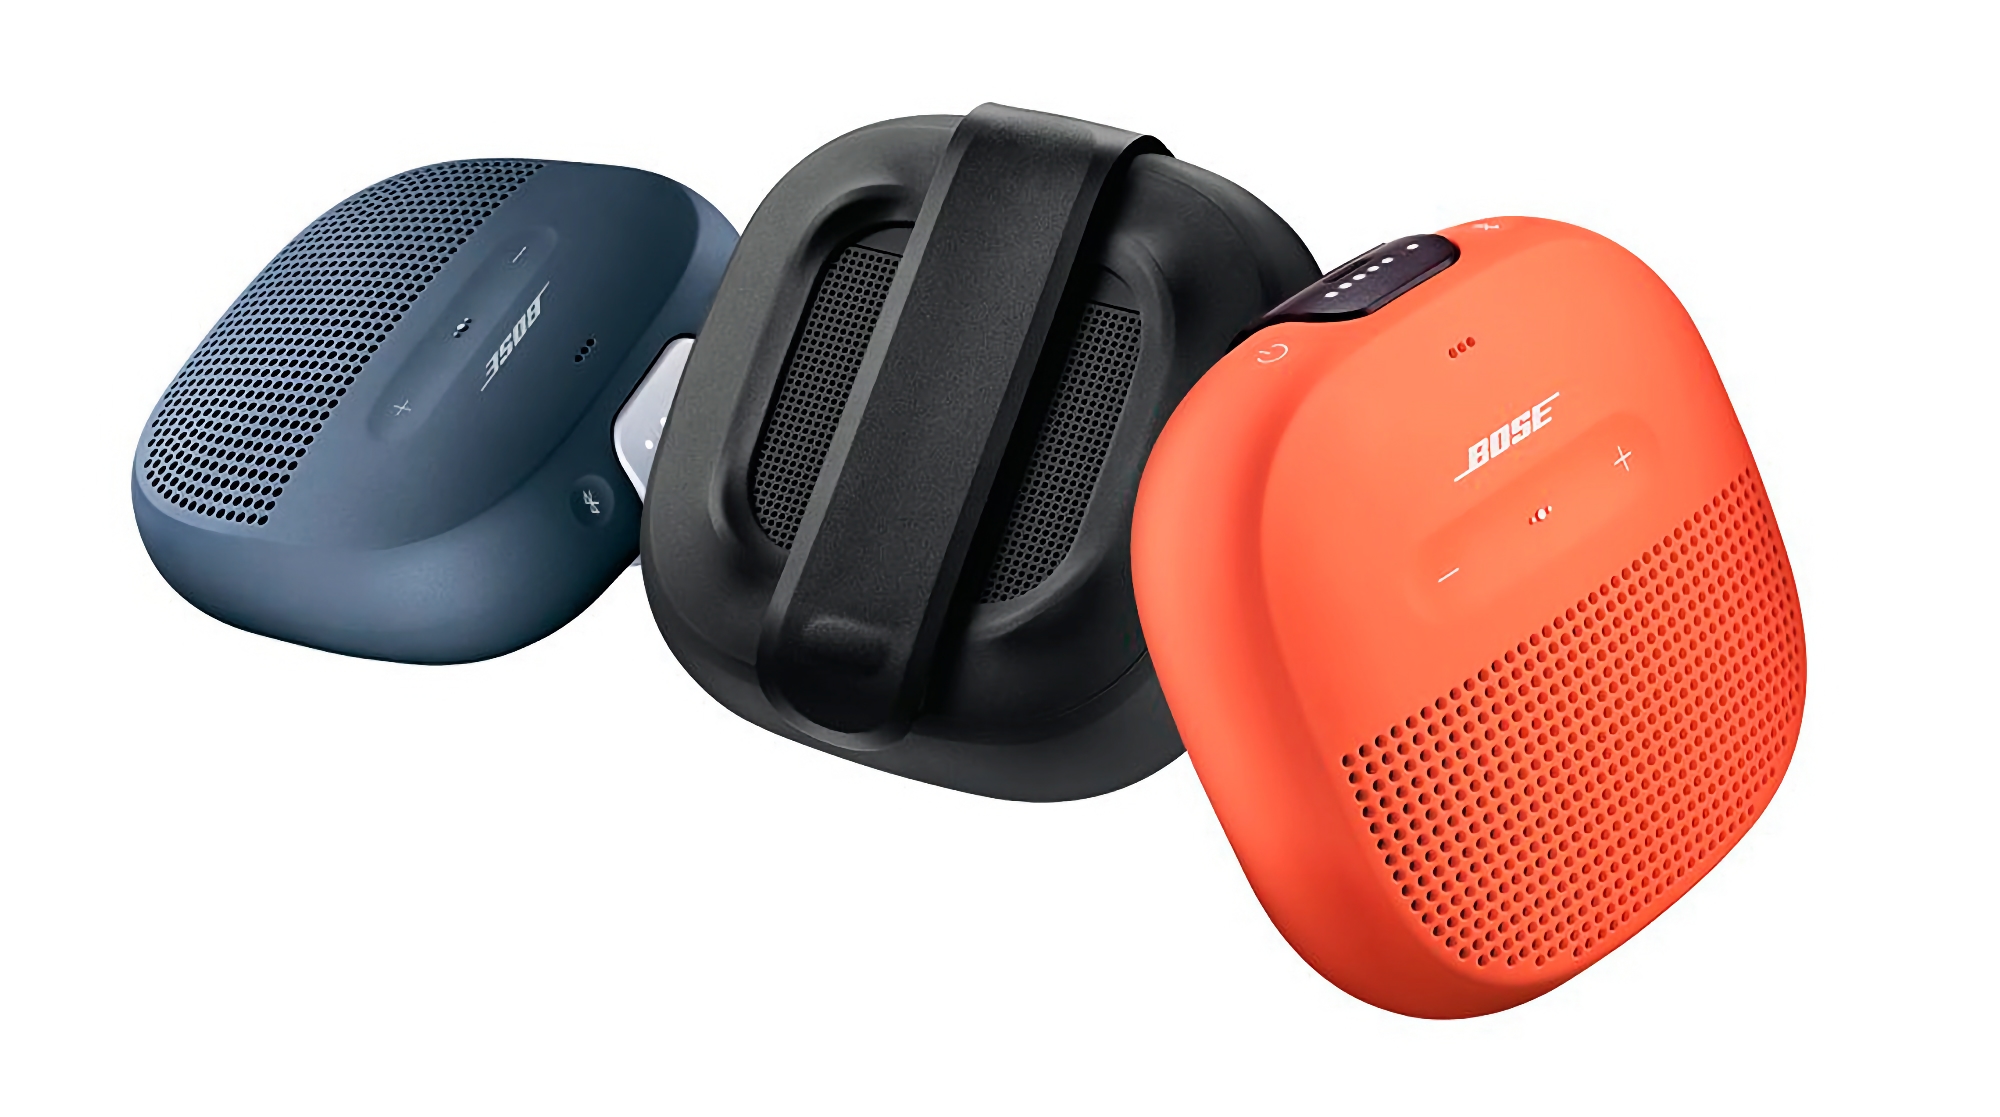 Bose SoundLink Micro na Amazon za 20 dolarów taniej: kompaktowy głośnik bezprzewodowy z ochroną IP67 i do 6 godzin pracy na baterii